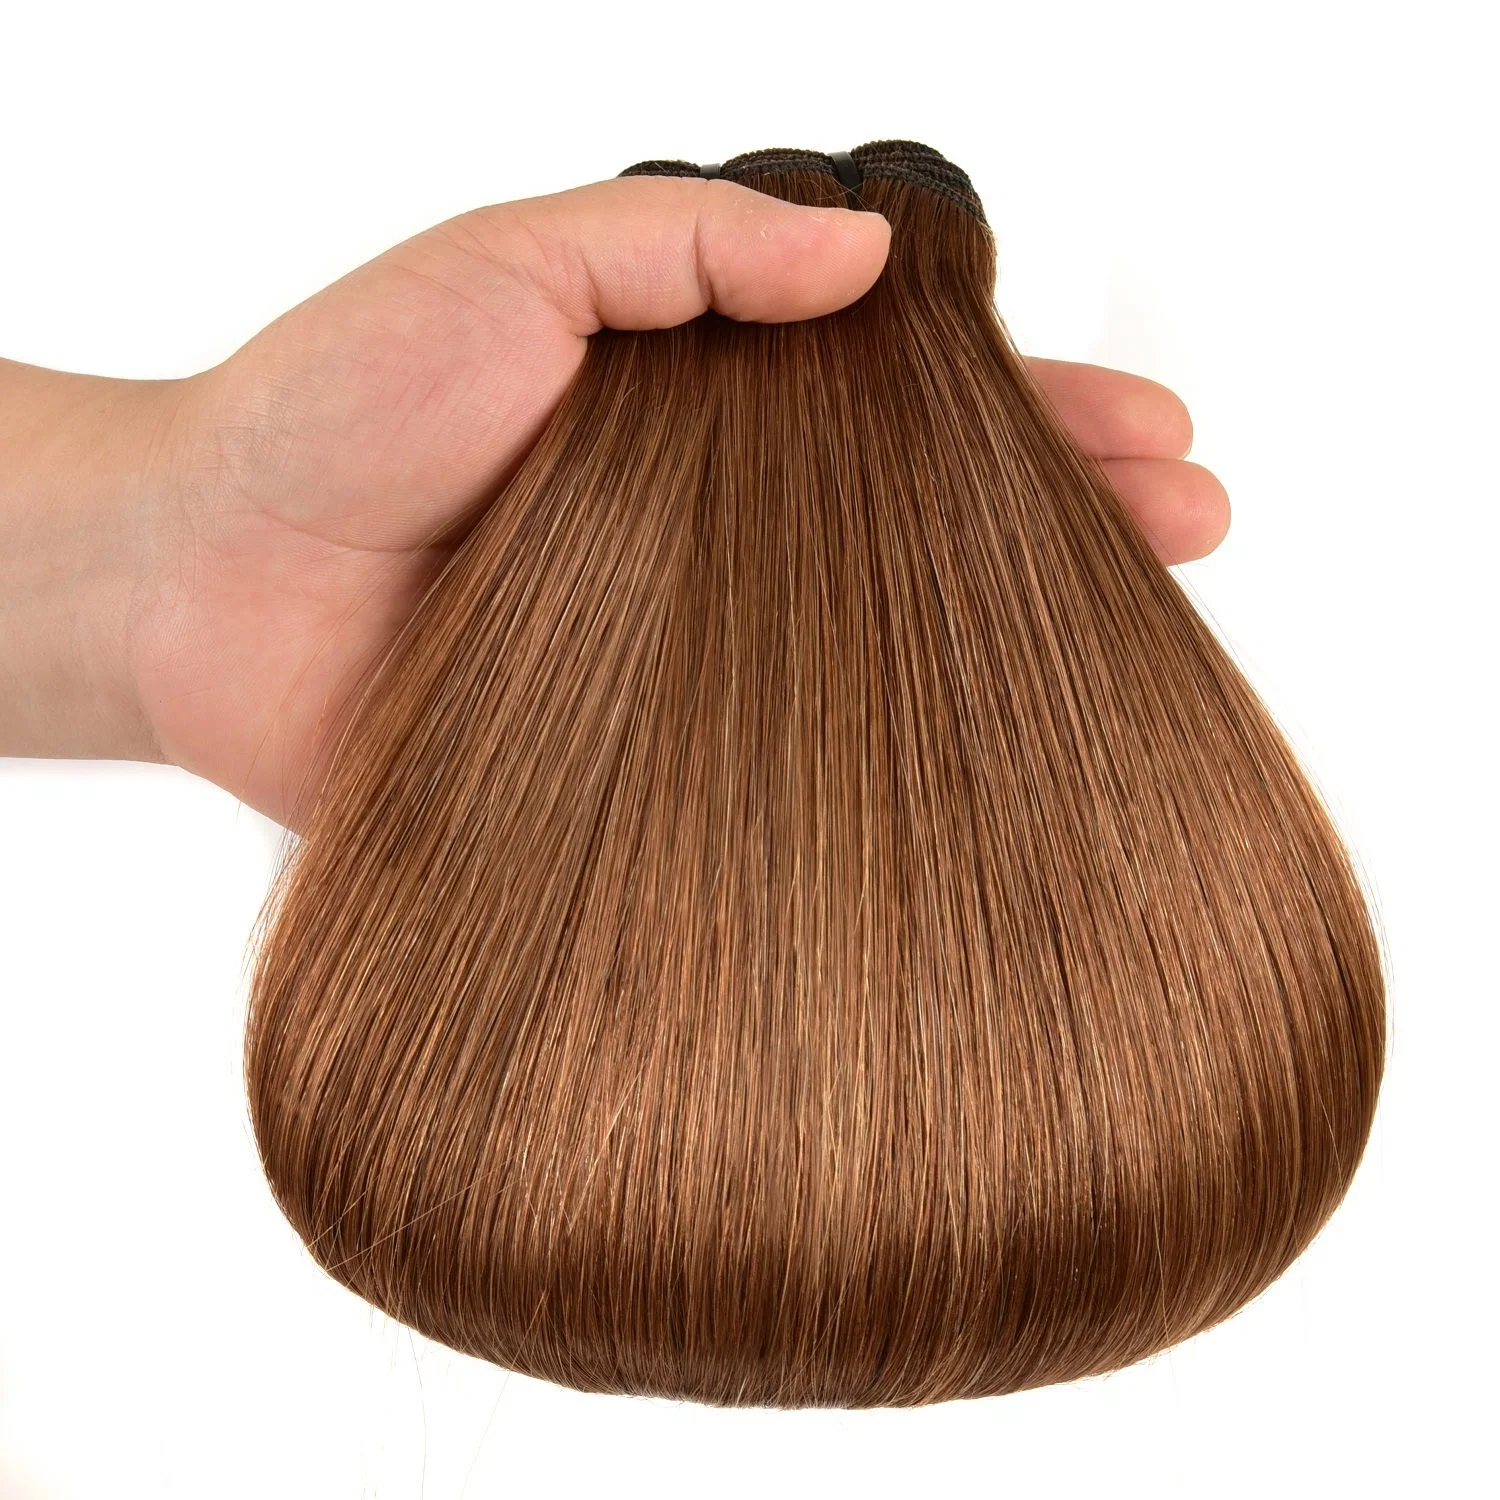 Насадка для волос Remy Human Hair Extension Human Hair Weft (AV-HW-613), двойная вычерчивается